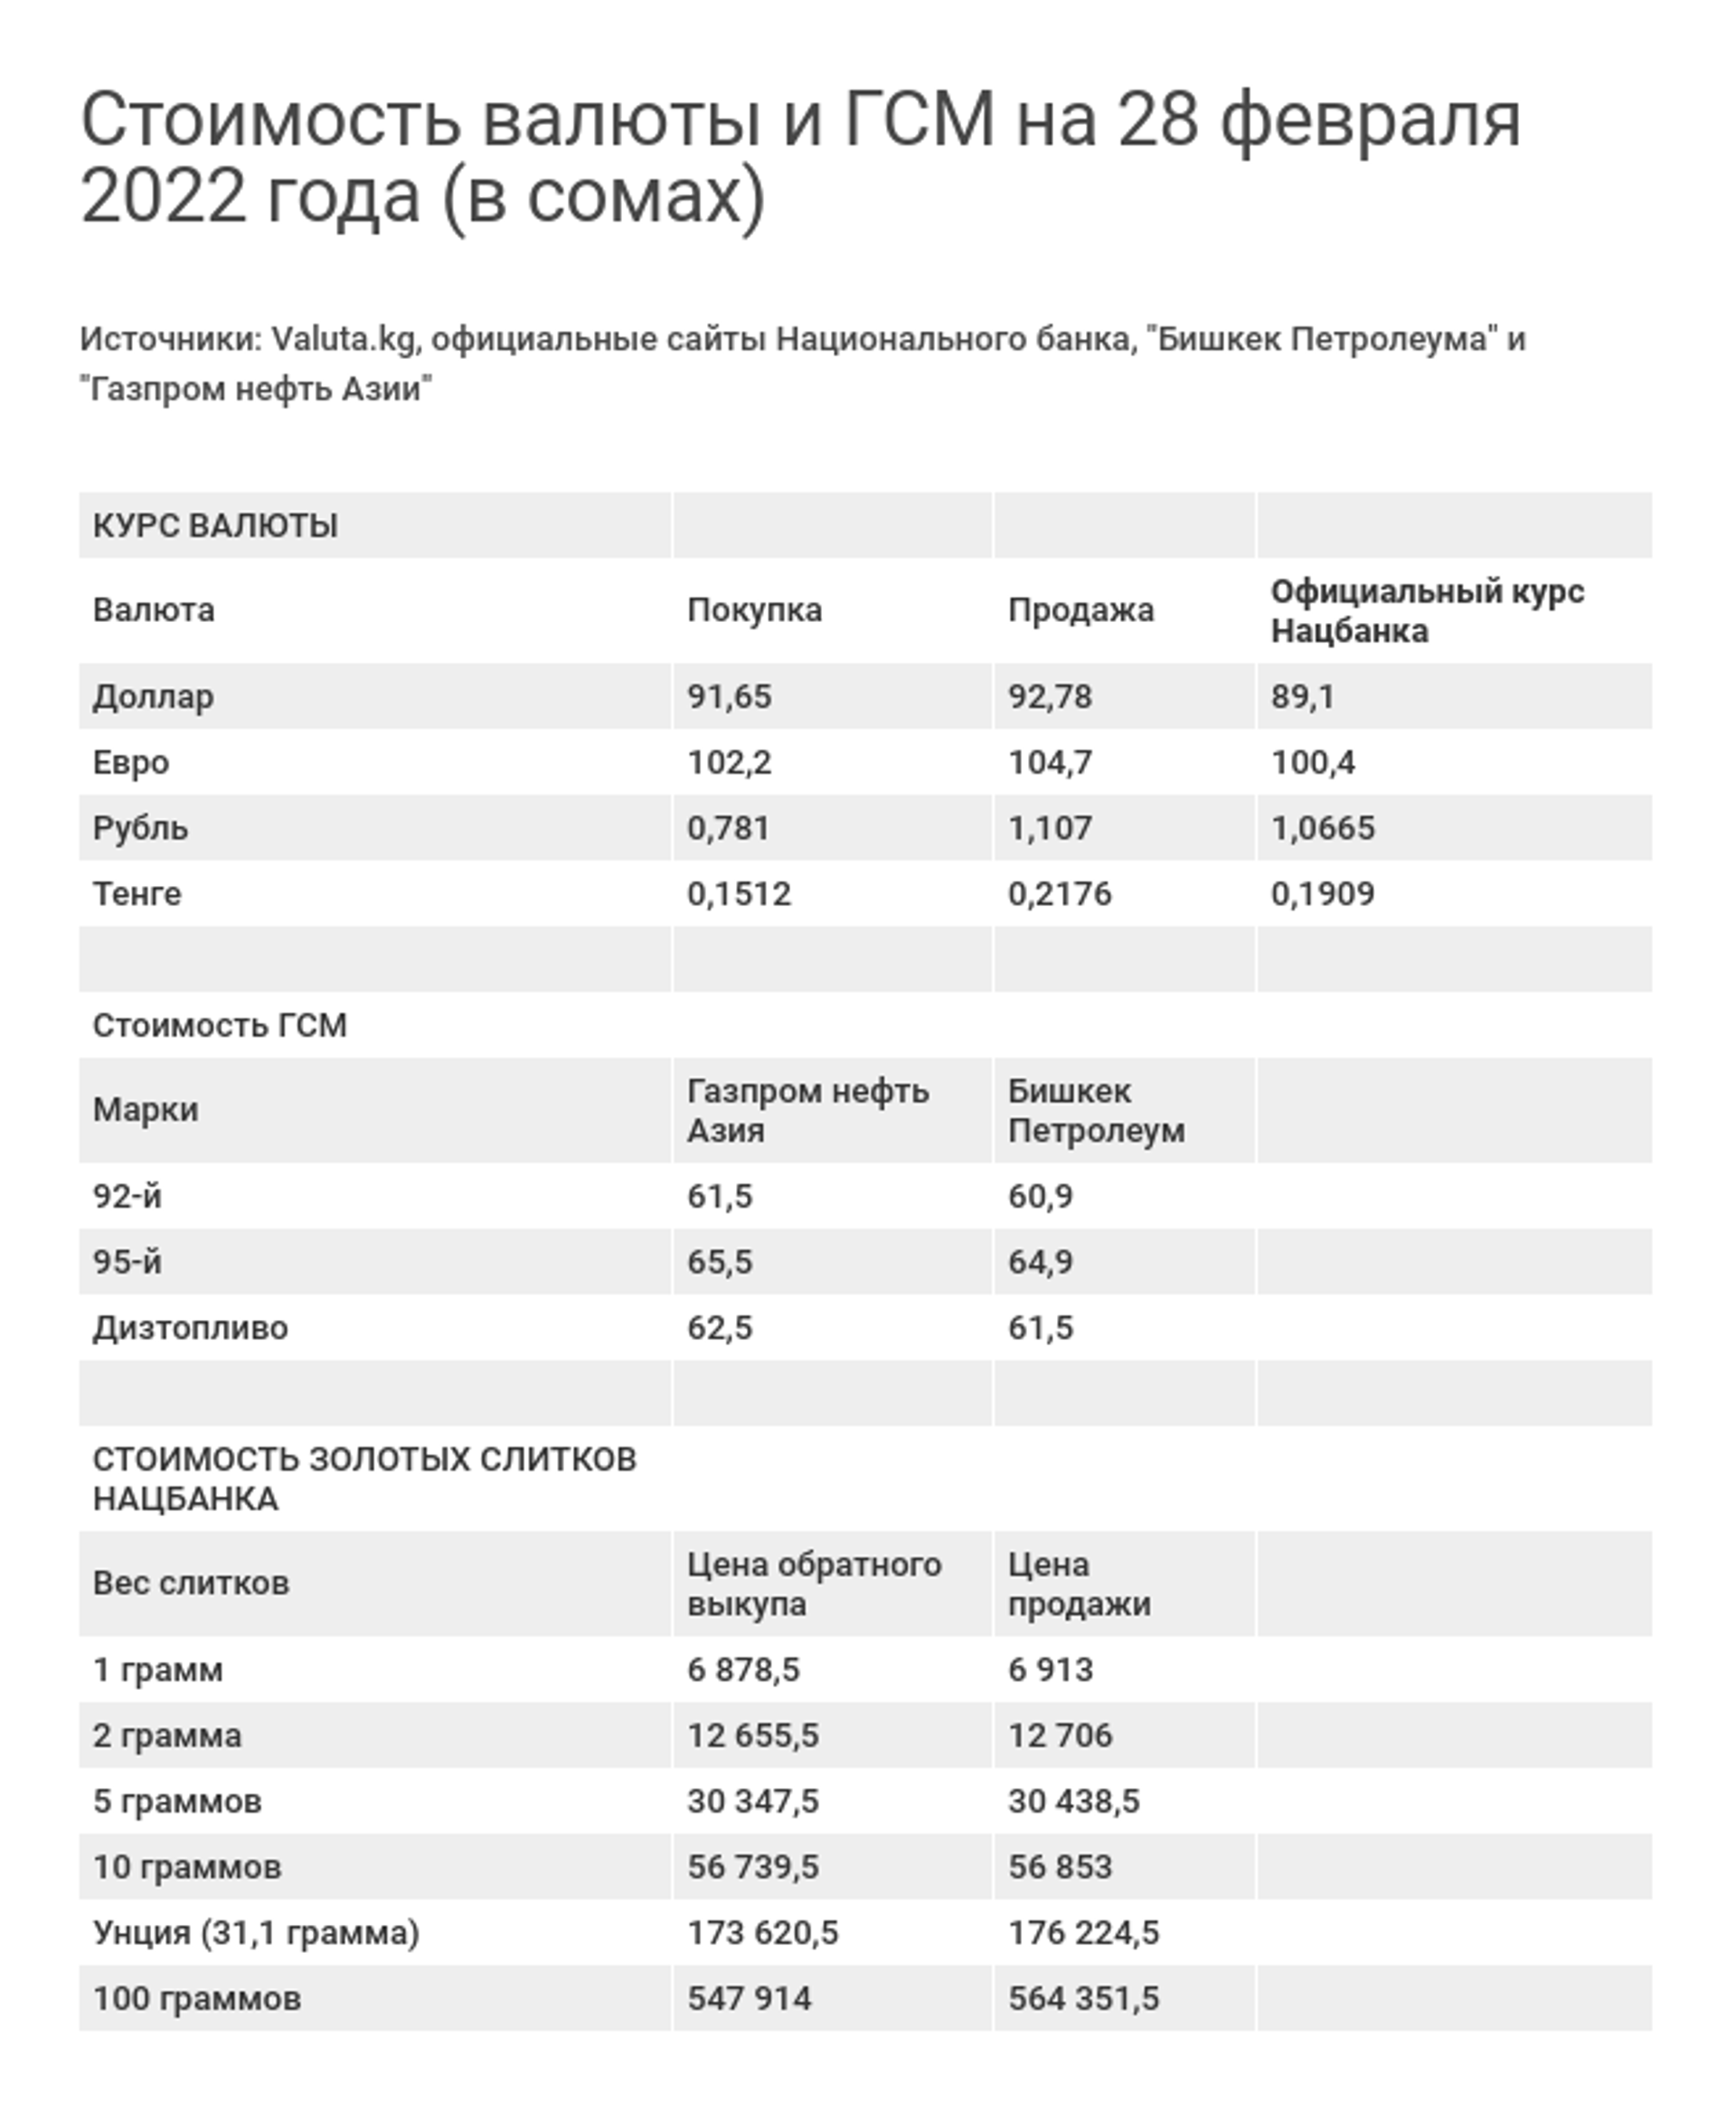 Стоимость валюты и ГСМ на 28 февраля 2022 года (в сомах) - Sputnik Кыргызстан, 1920, 28.02.2022